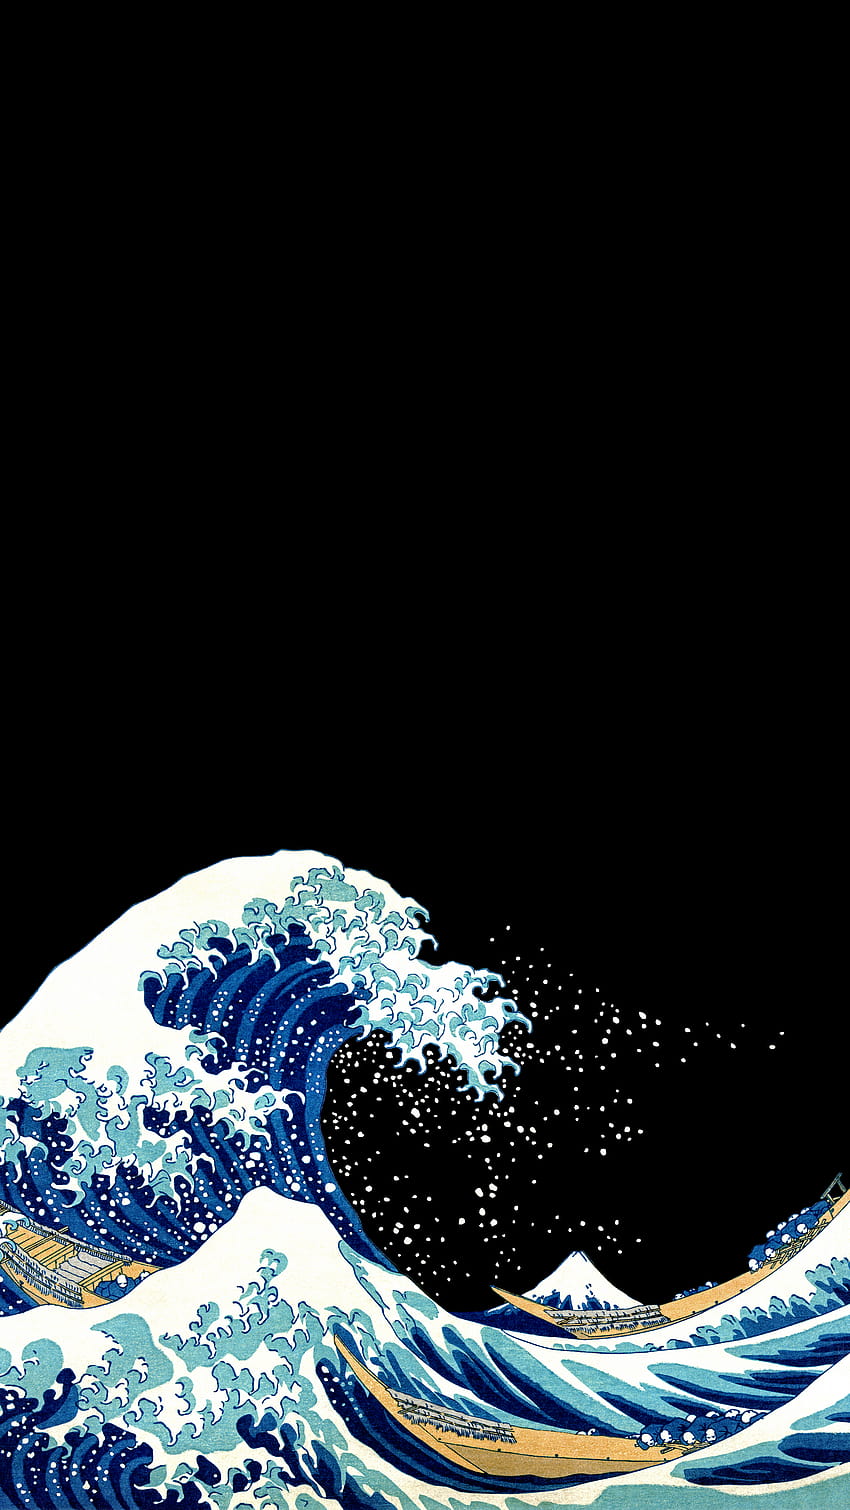 2160x3840] Mi opinión sobre una gran ola AMOLED de Kanagawa, la gran ola de Kanagawa fondo de pantalla del teléfono